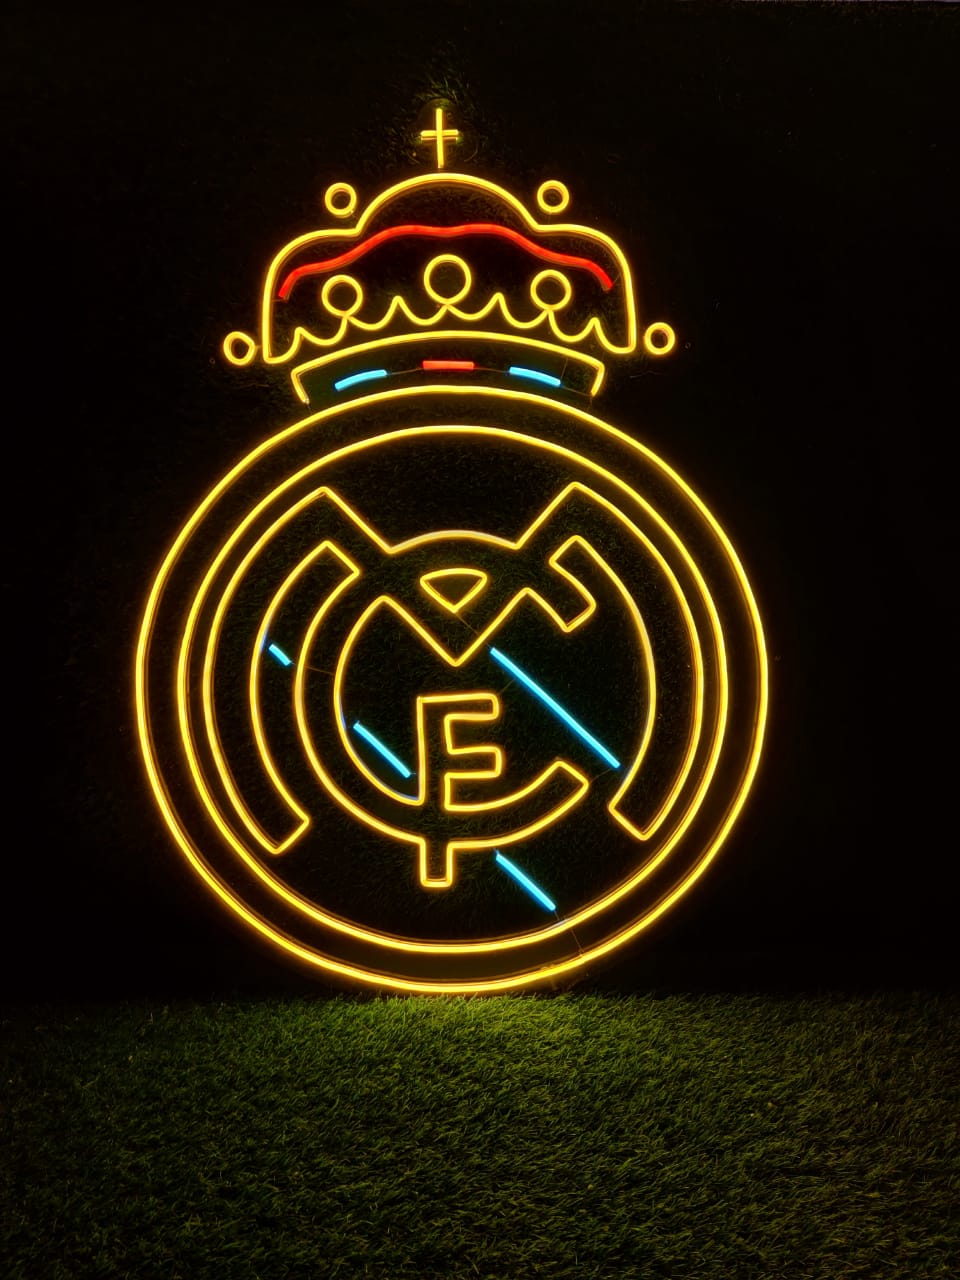 Escudo Real Madrid  Articulos y vinilos personalizados